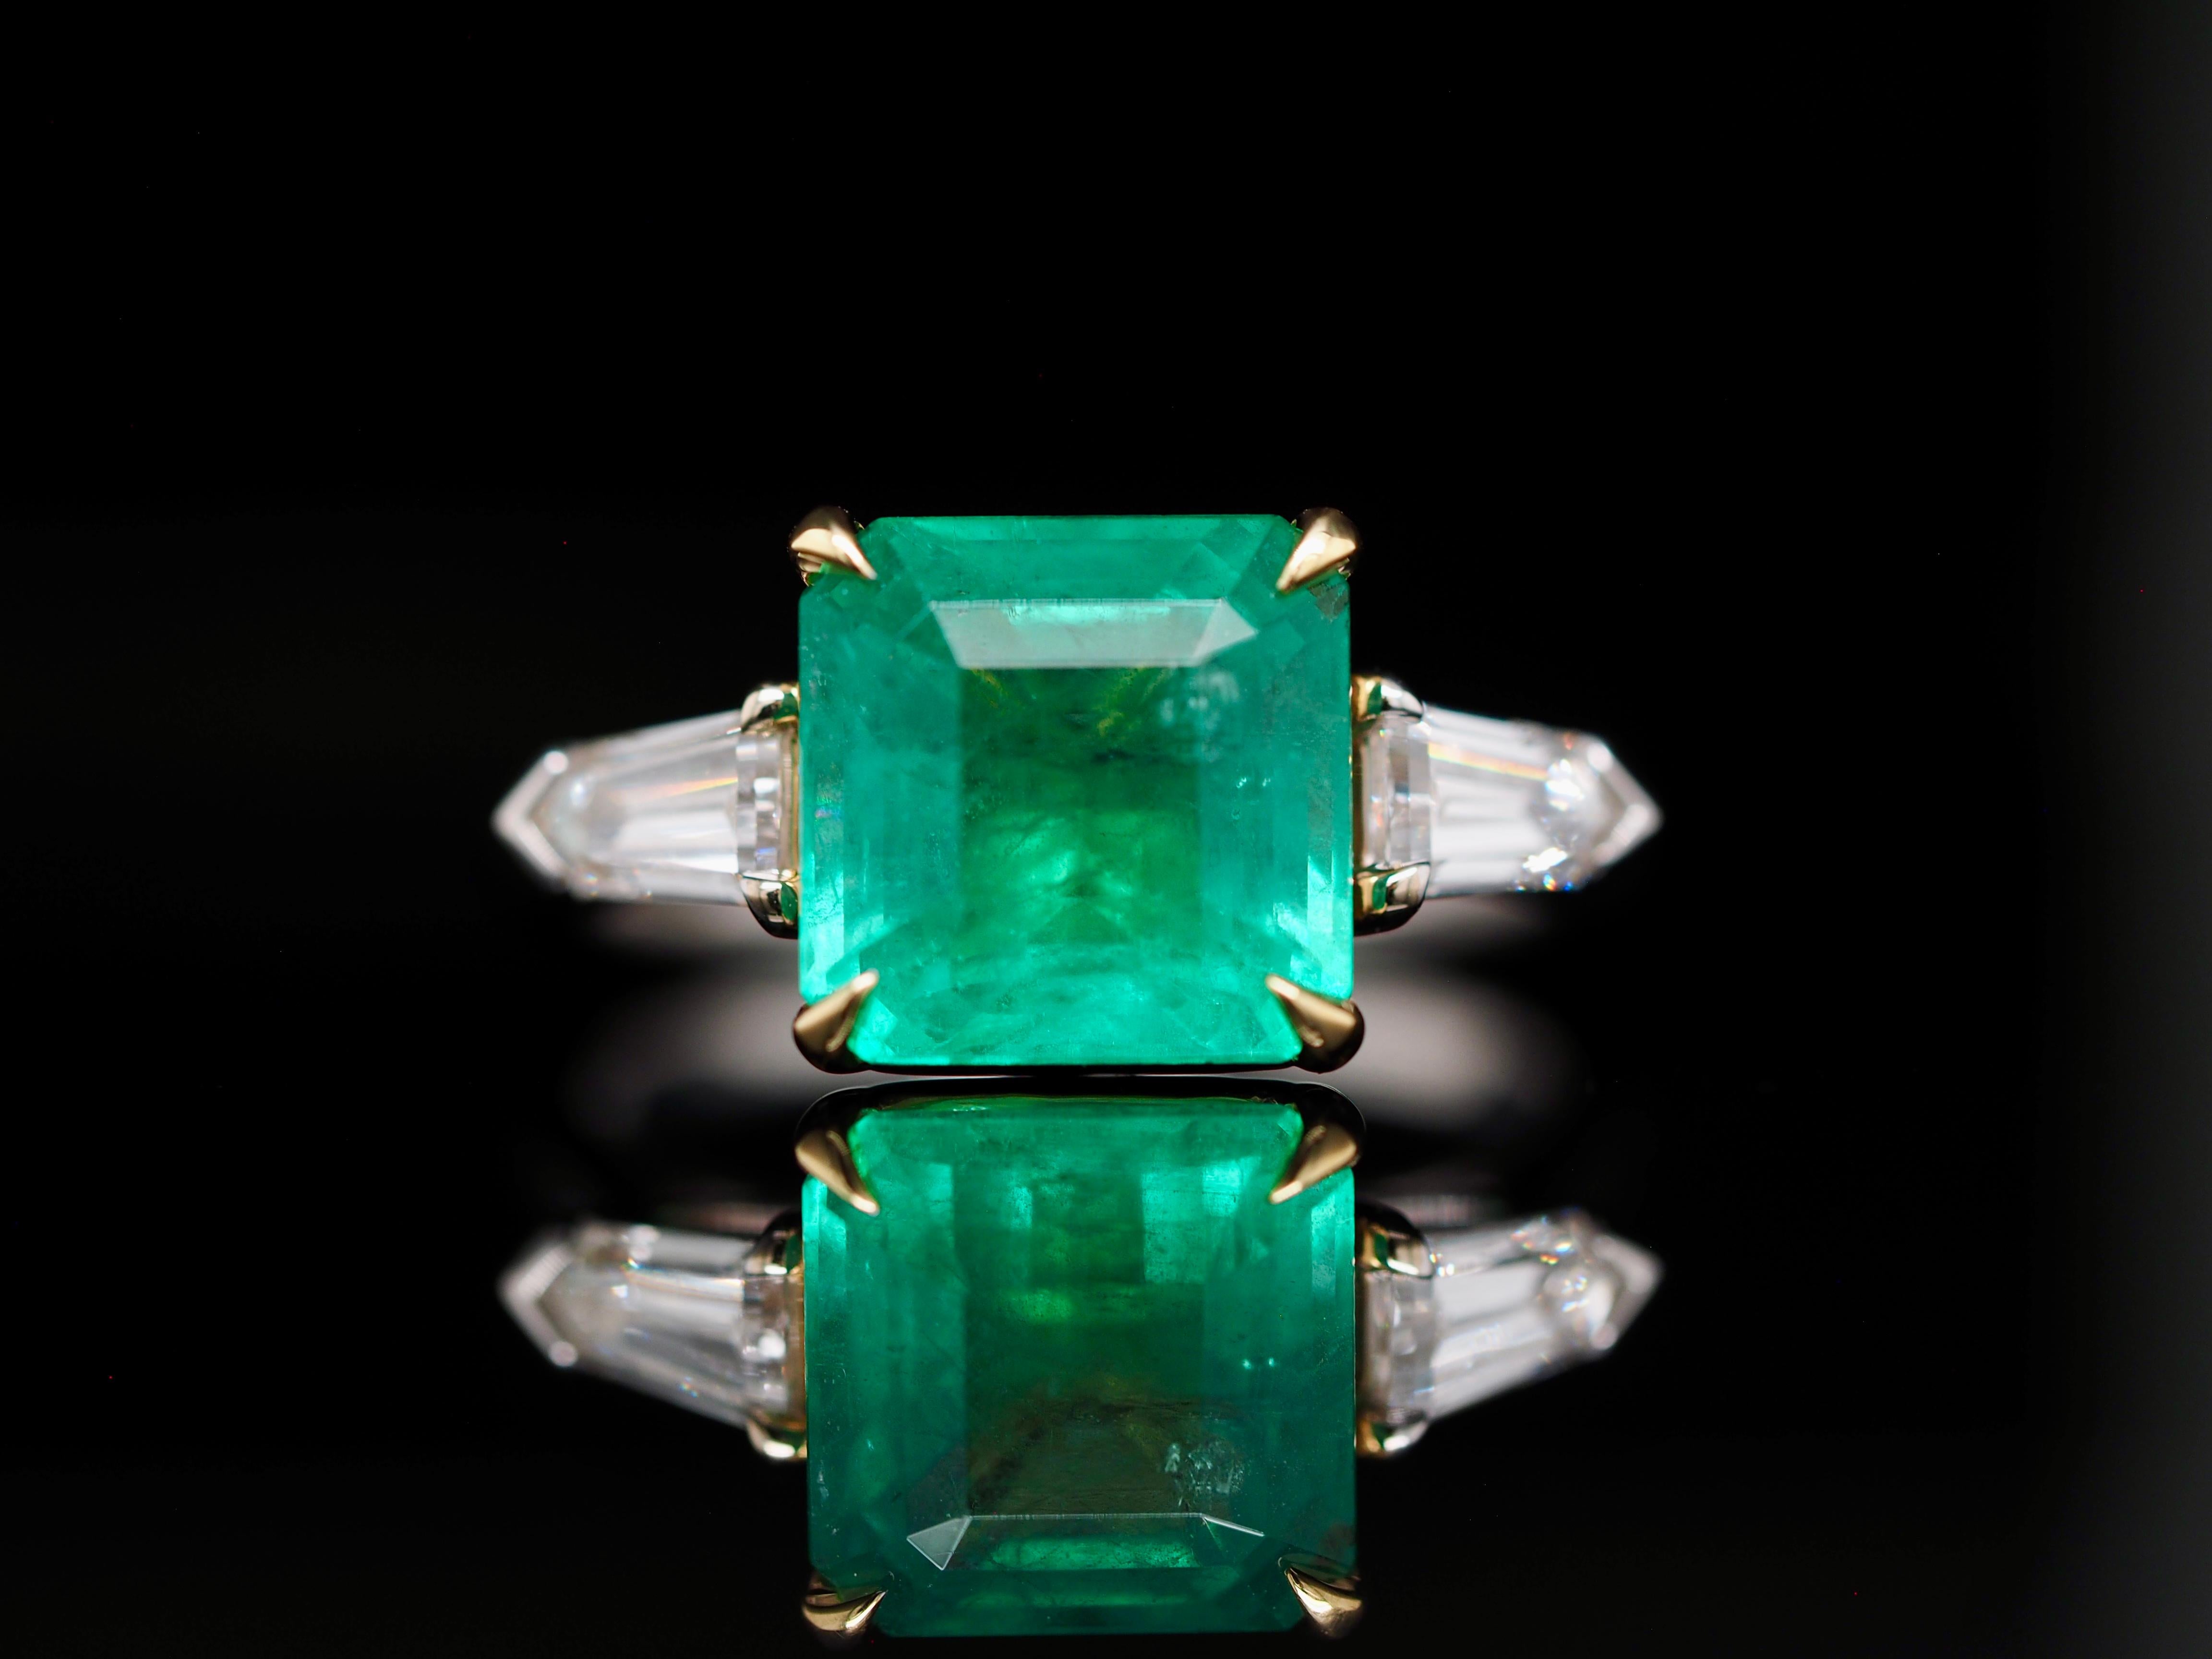 Dieser mythische Ring stammt direkt aus einem Fantasy-Buch. Es hat eine unglaubliche natürliche tiefgrünen Sambia Smaragd. Er ist in 18 Karat Weißgold gefasst, wobei der Smaragd von einer goldenen Zacke gehalten wird. Enthält erstaunliche Kugel,